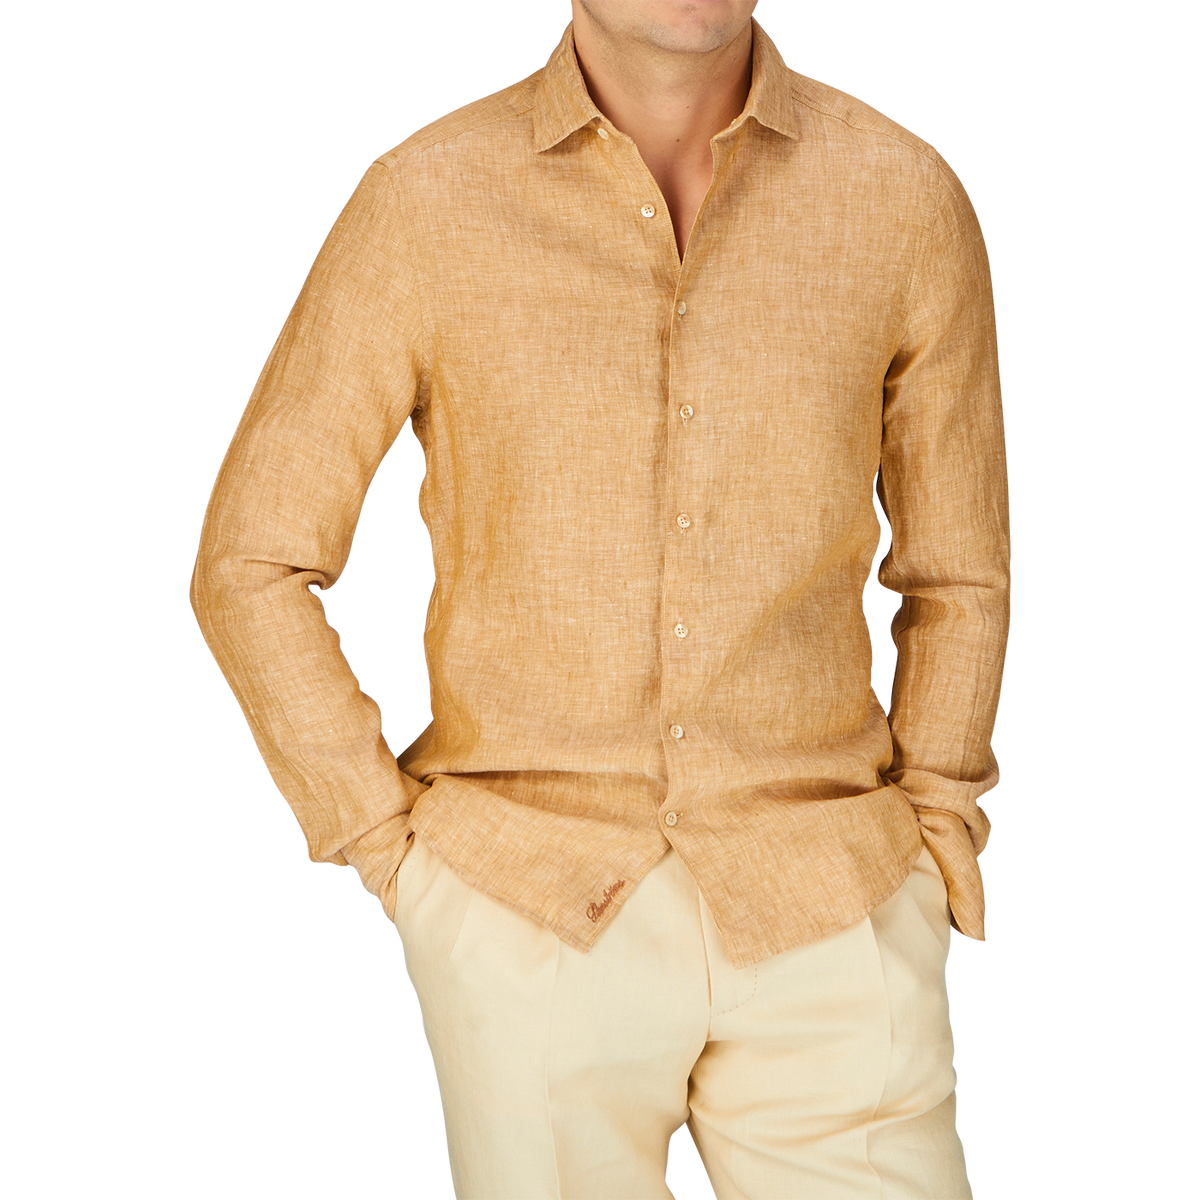 A man wearing a Tobacco Brown Linen Slimline Shirt by Stenströms.